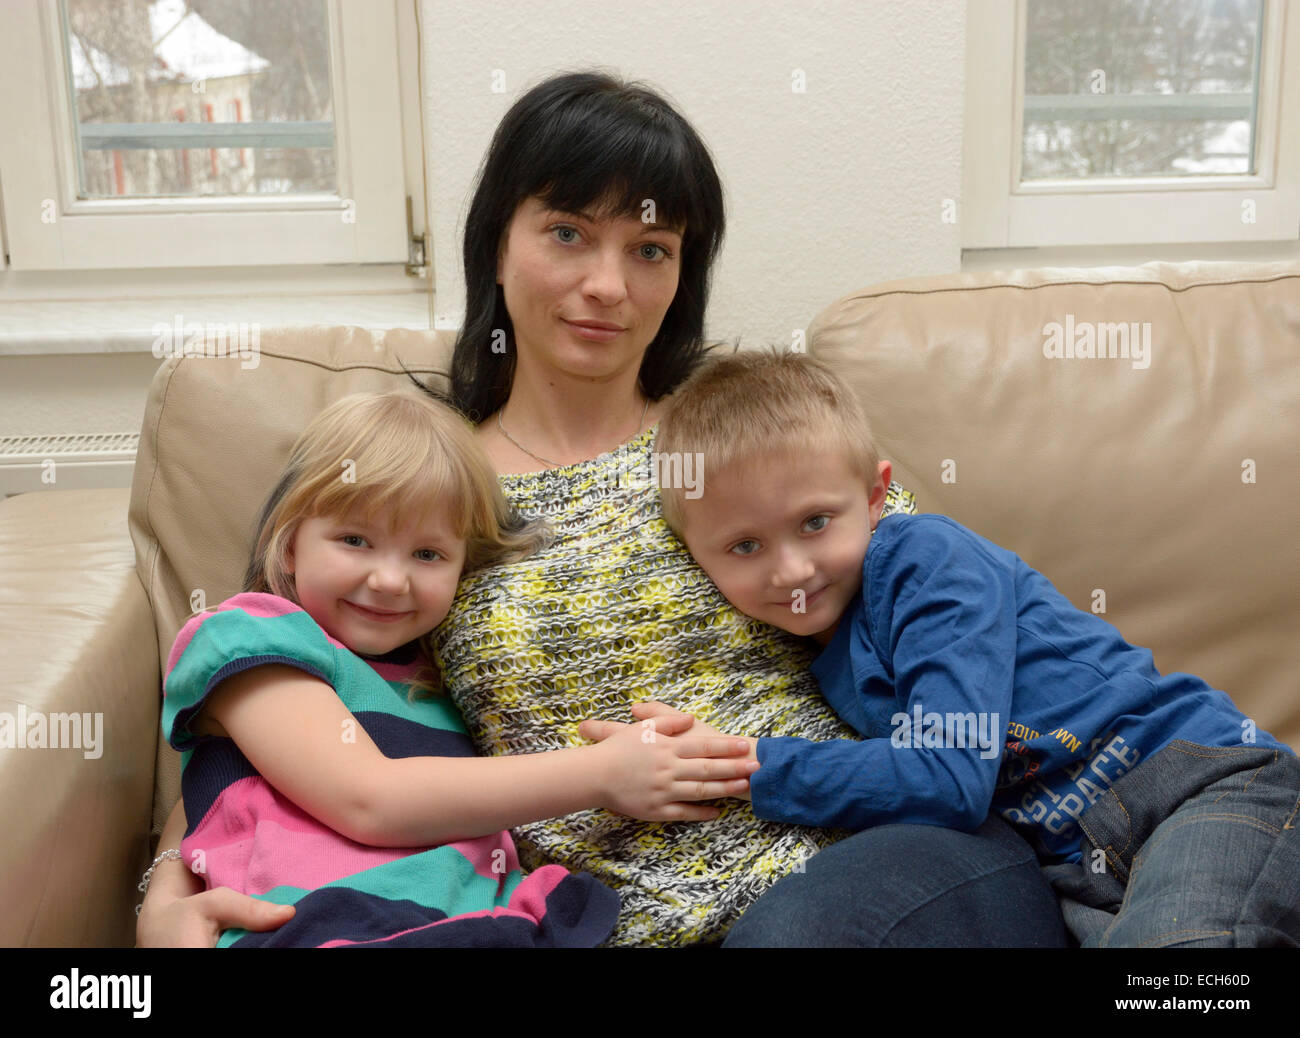 Mädchen, 5 Jahre, junge, 7 Jahre mit ihrer Mutter, 35 Jahre, sitzt auf einem sofa Stockfoto